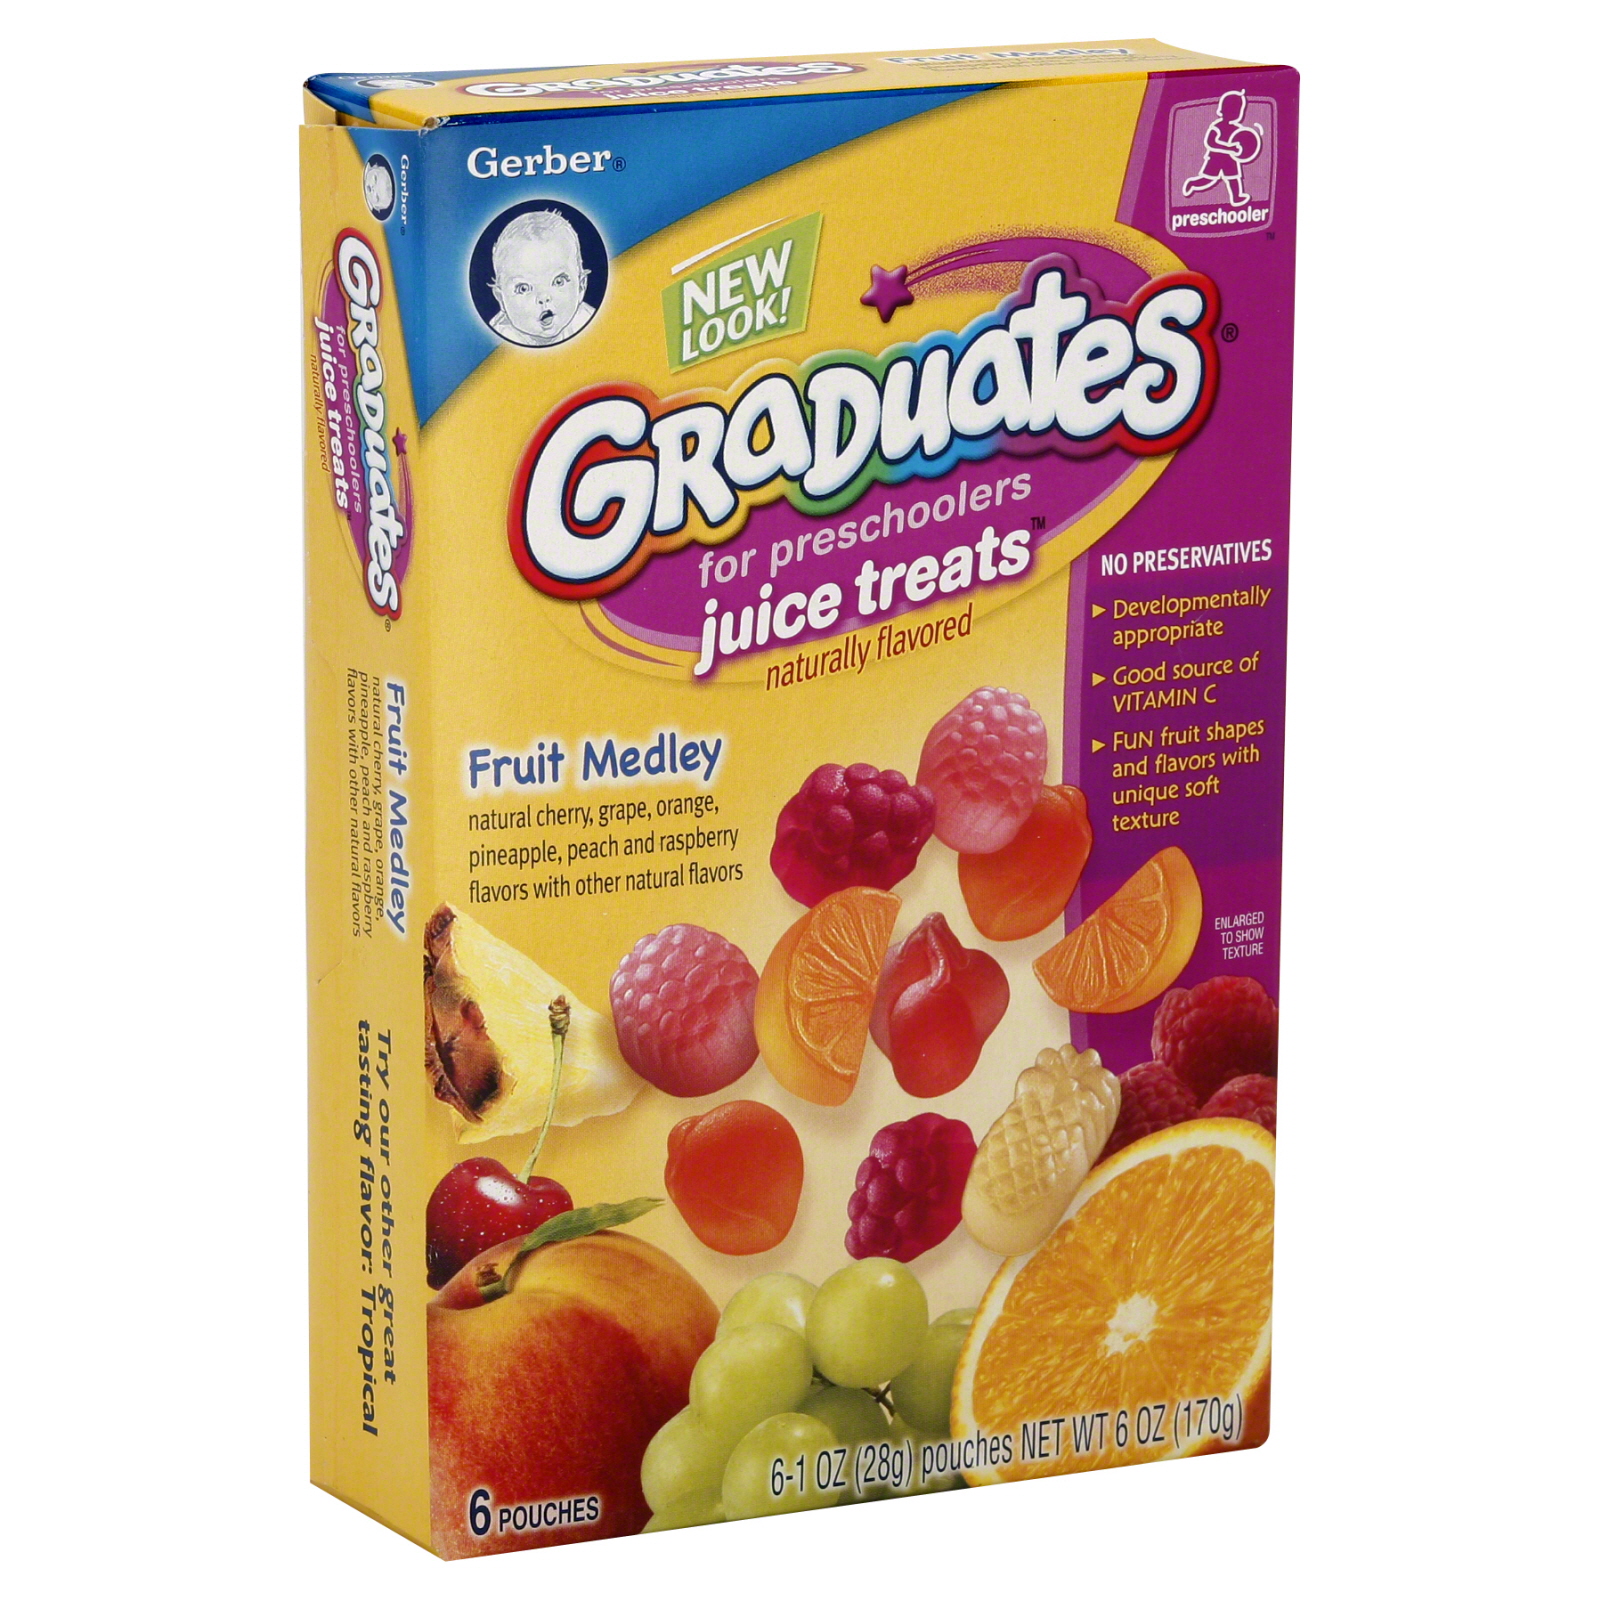 Gerber Graduates Juice Treats For Preschoolers Fruit Medley 6 oz